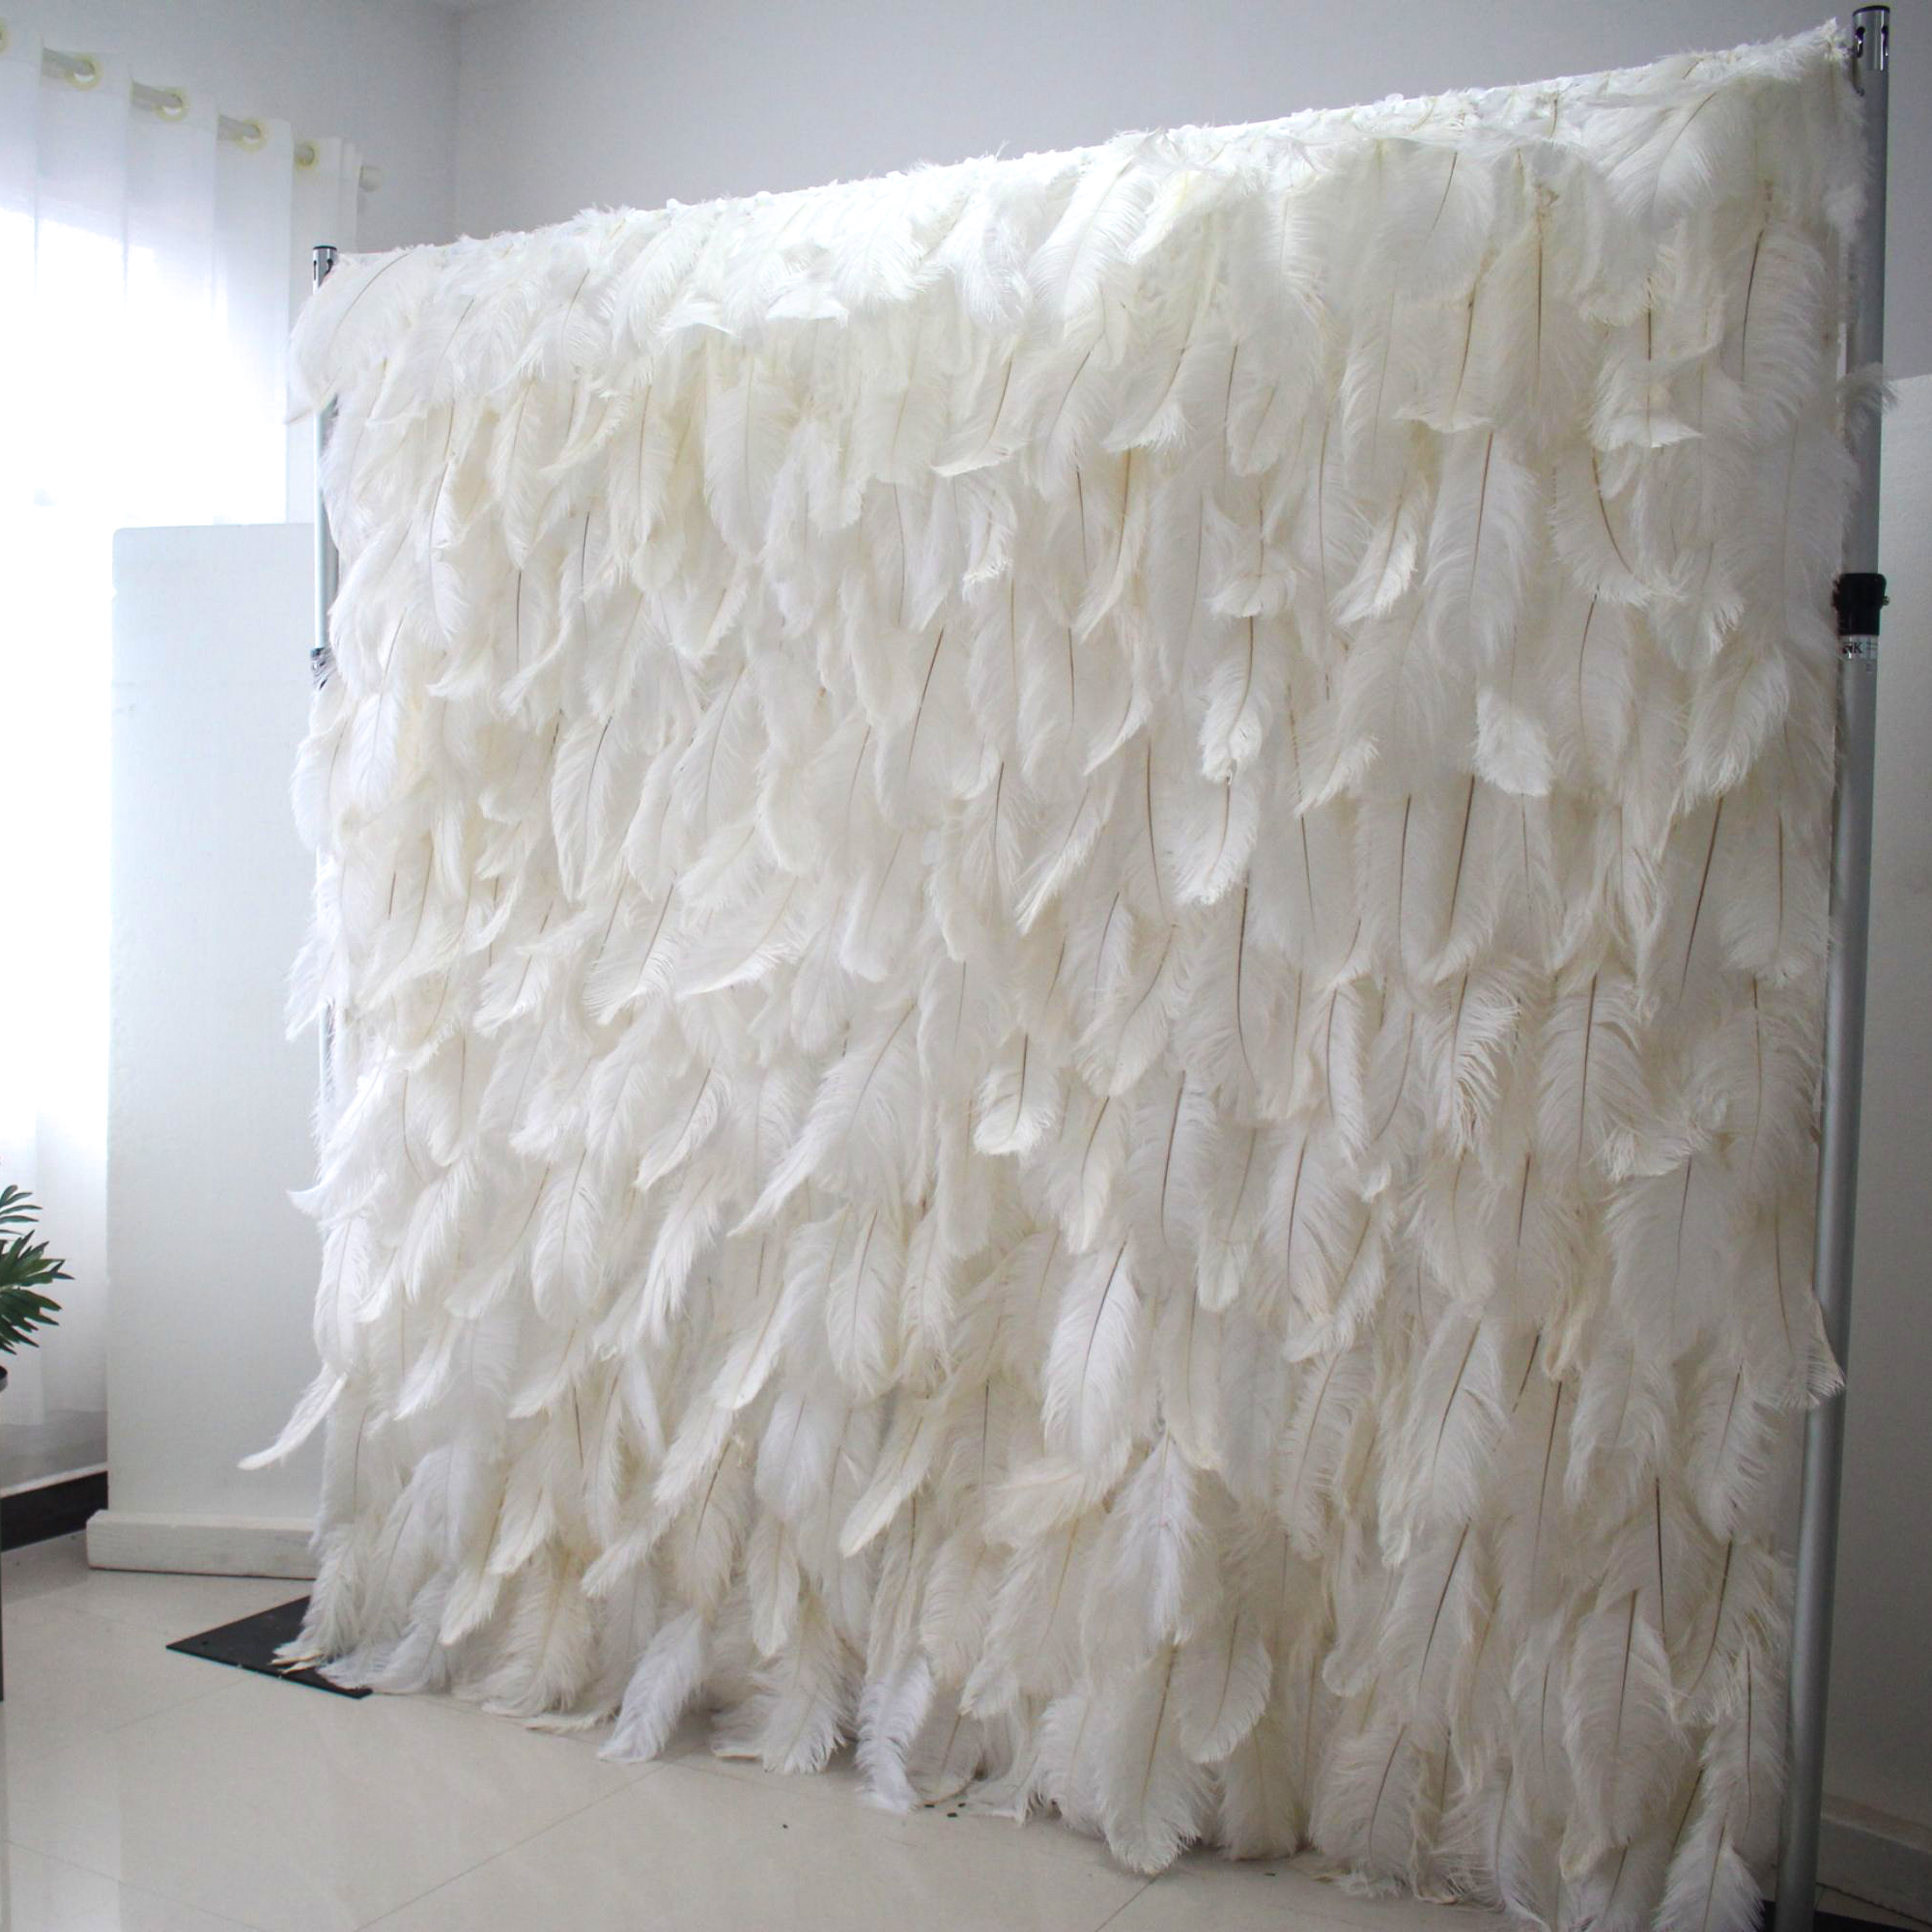 Élégant fond de mur de plumes d’autruche blanche - Mur de tissu enroulable - Décor de fête nuptiale - Célébration des lieux de mariage Mur floral-VF-164 